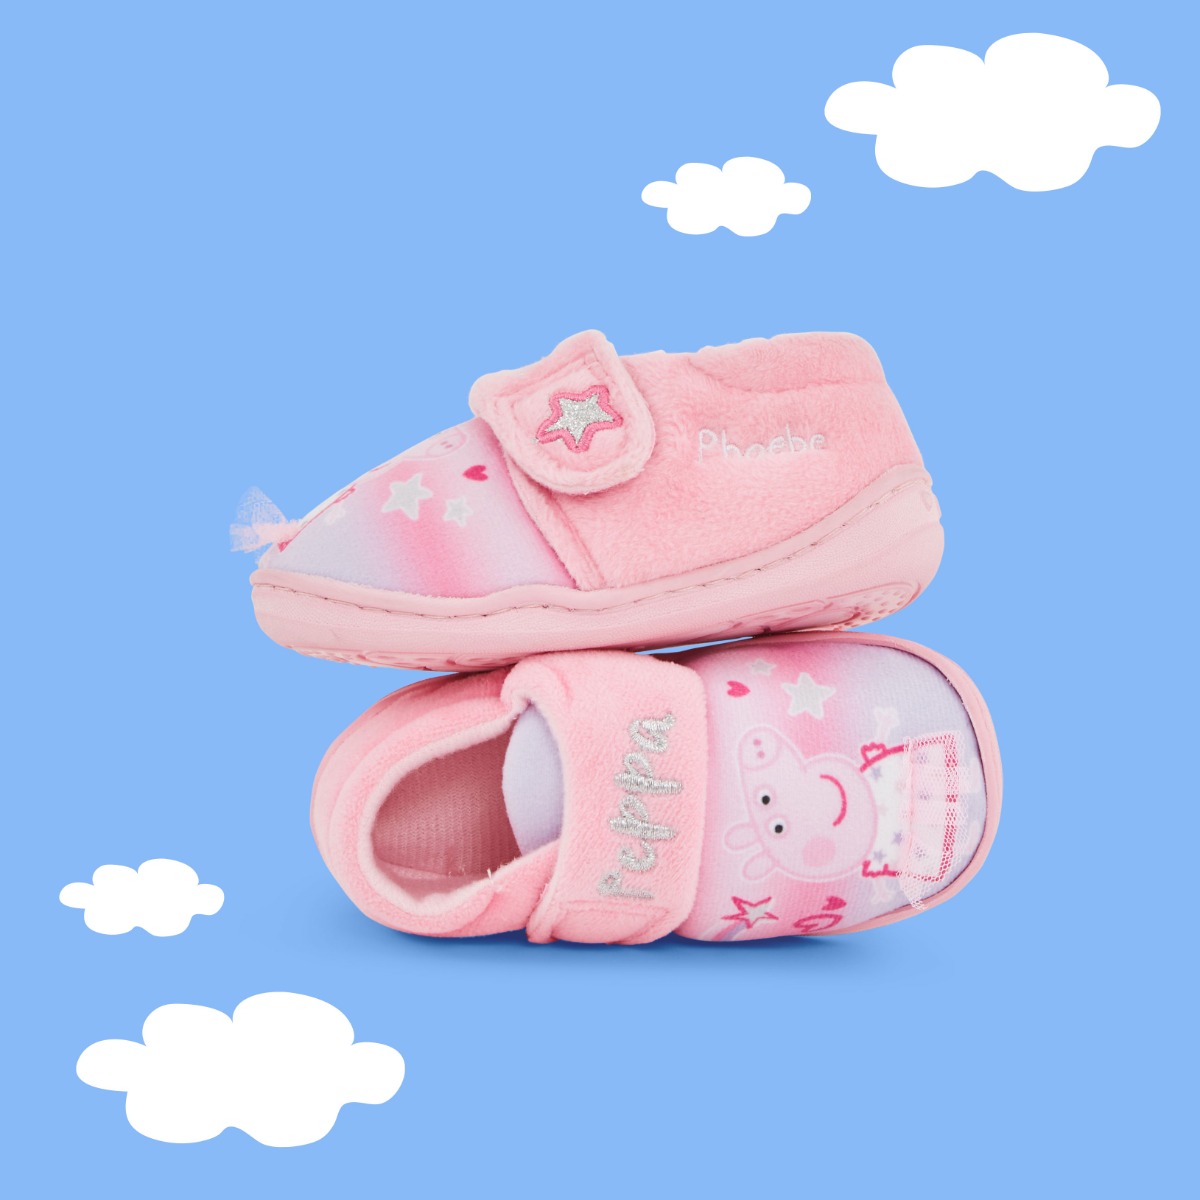 Personalised Pink Peppa Pig Slippers